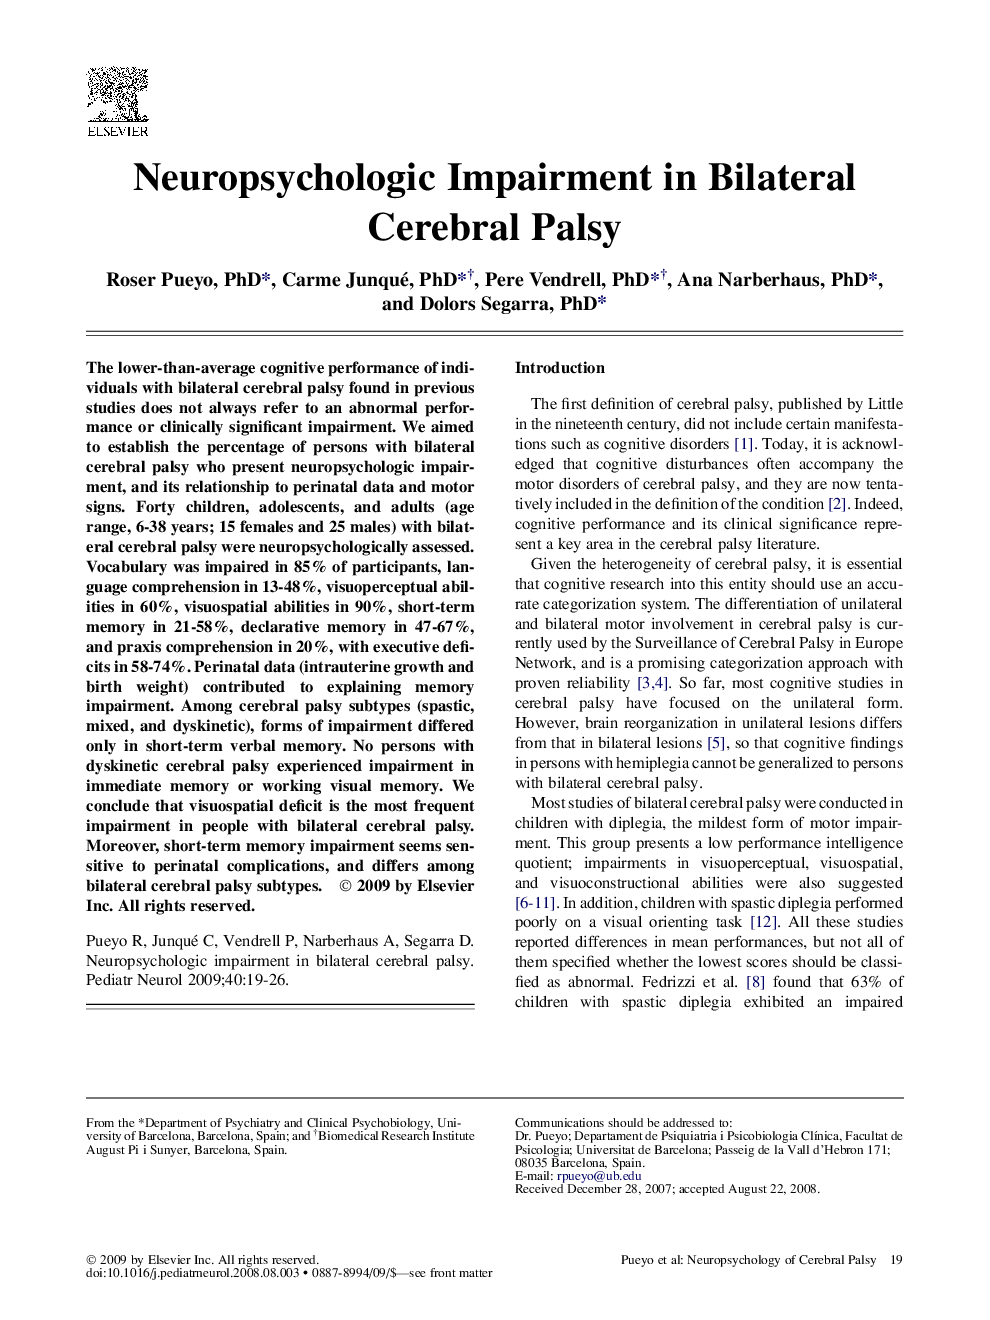 Neuropsychologic Impairment in Bilateral Cerebral Palsy